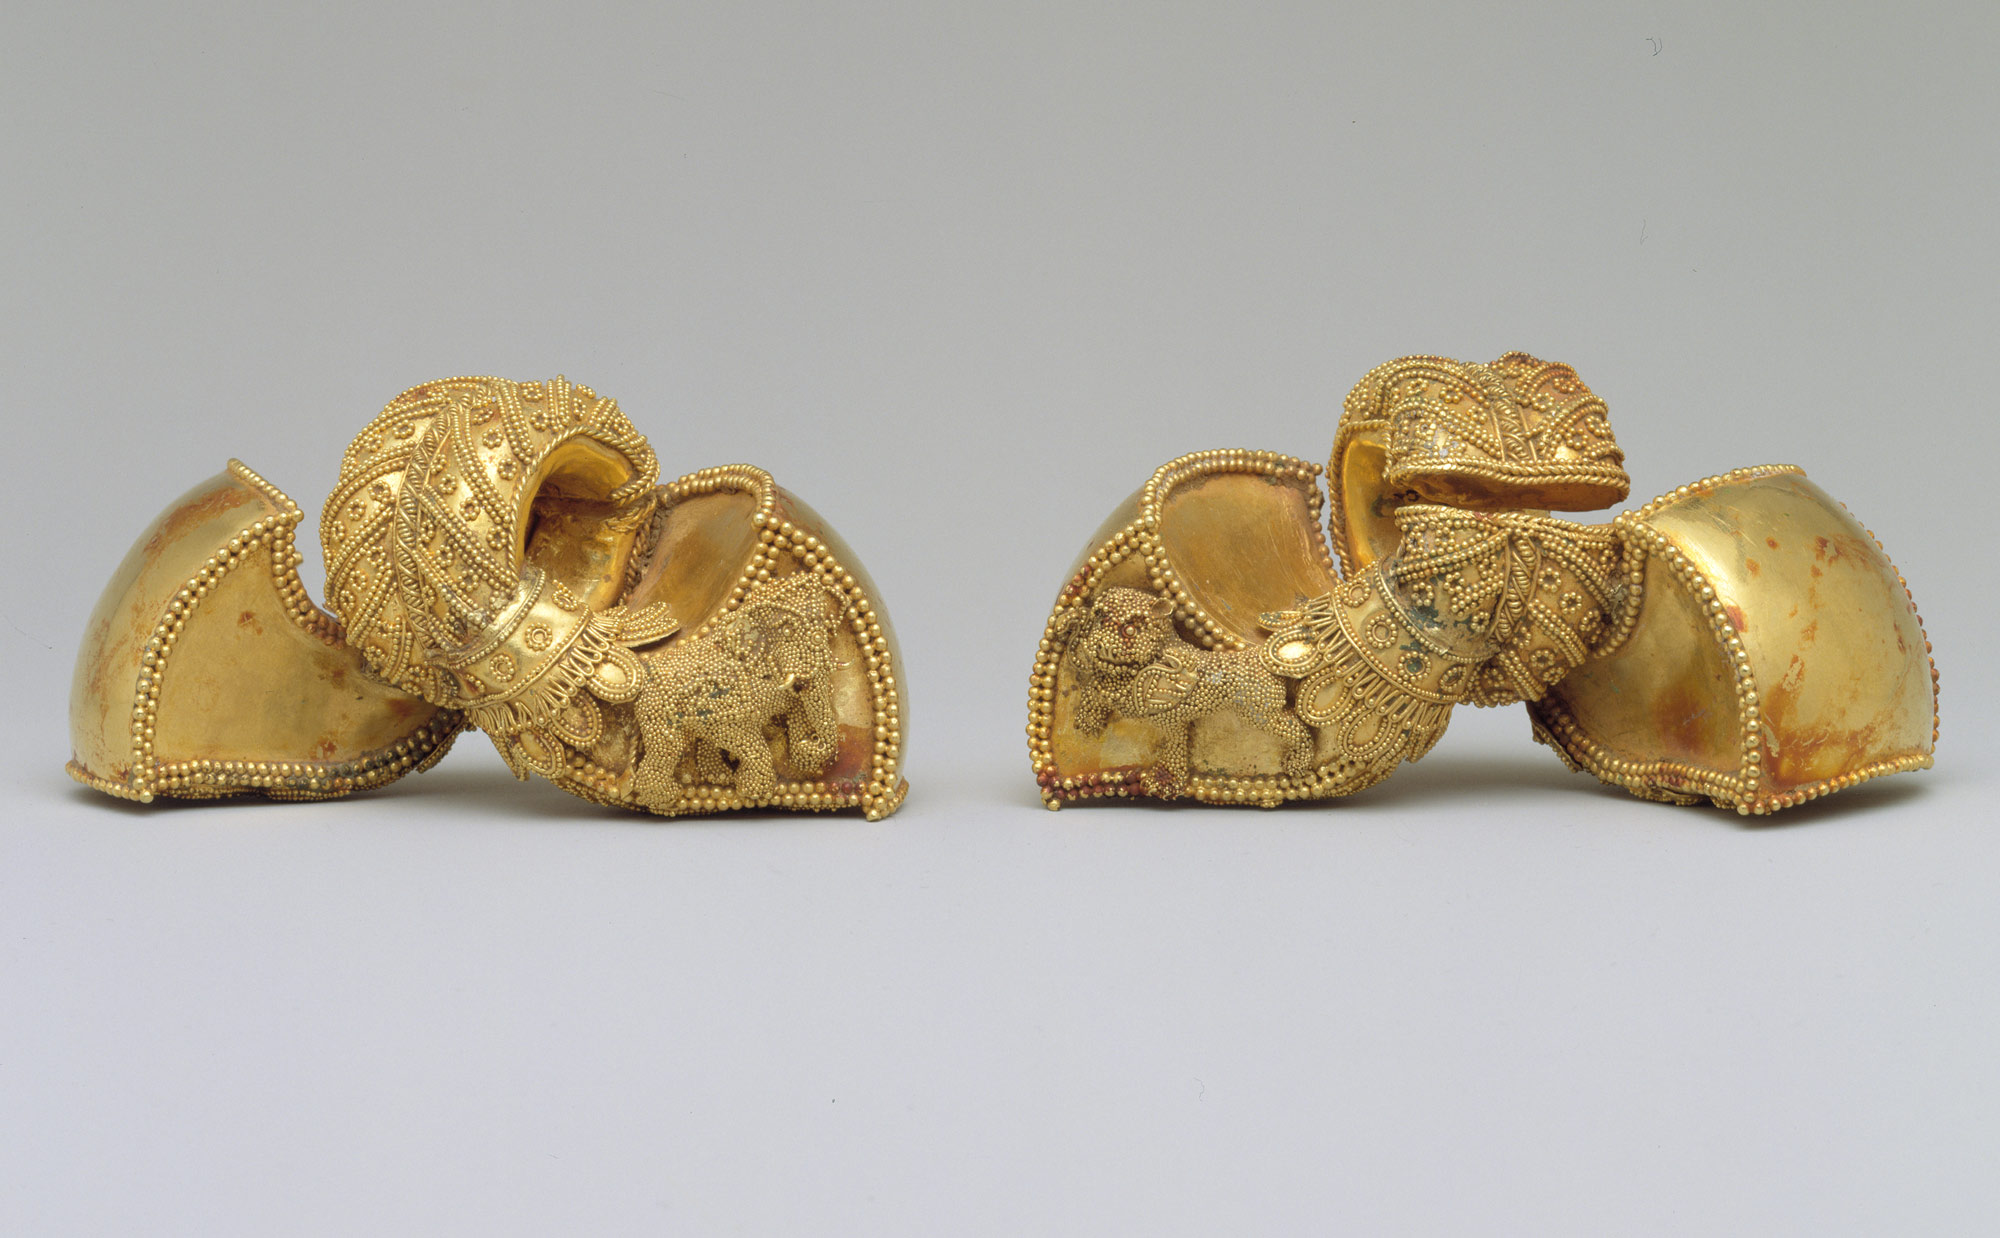 A pair of royal earrings